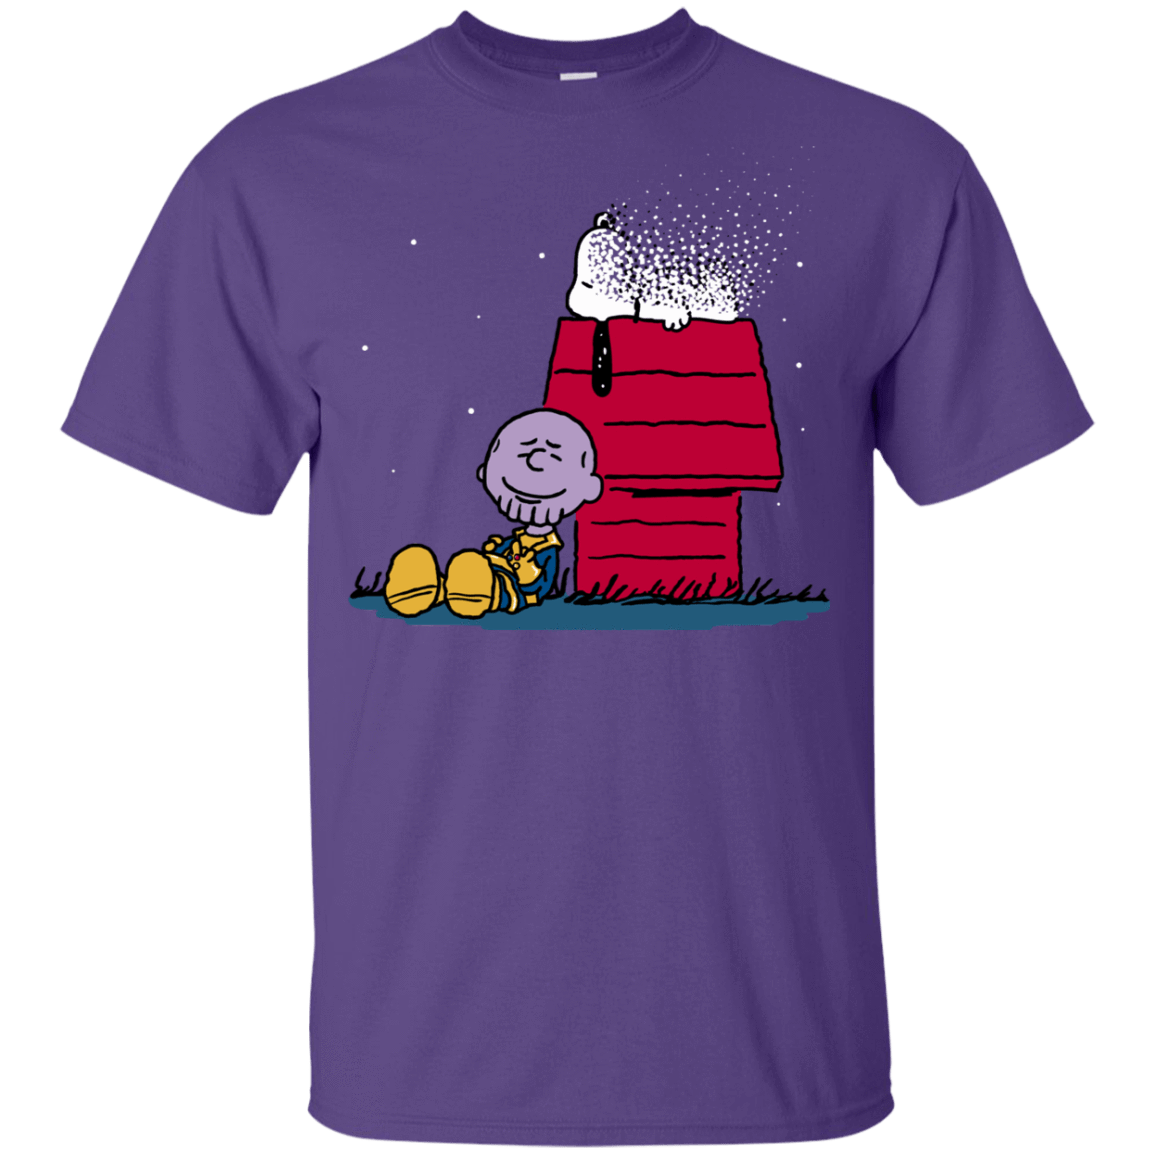 T-Shirts Purple / YXS Snapy Youth T-Shirt